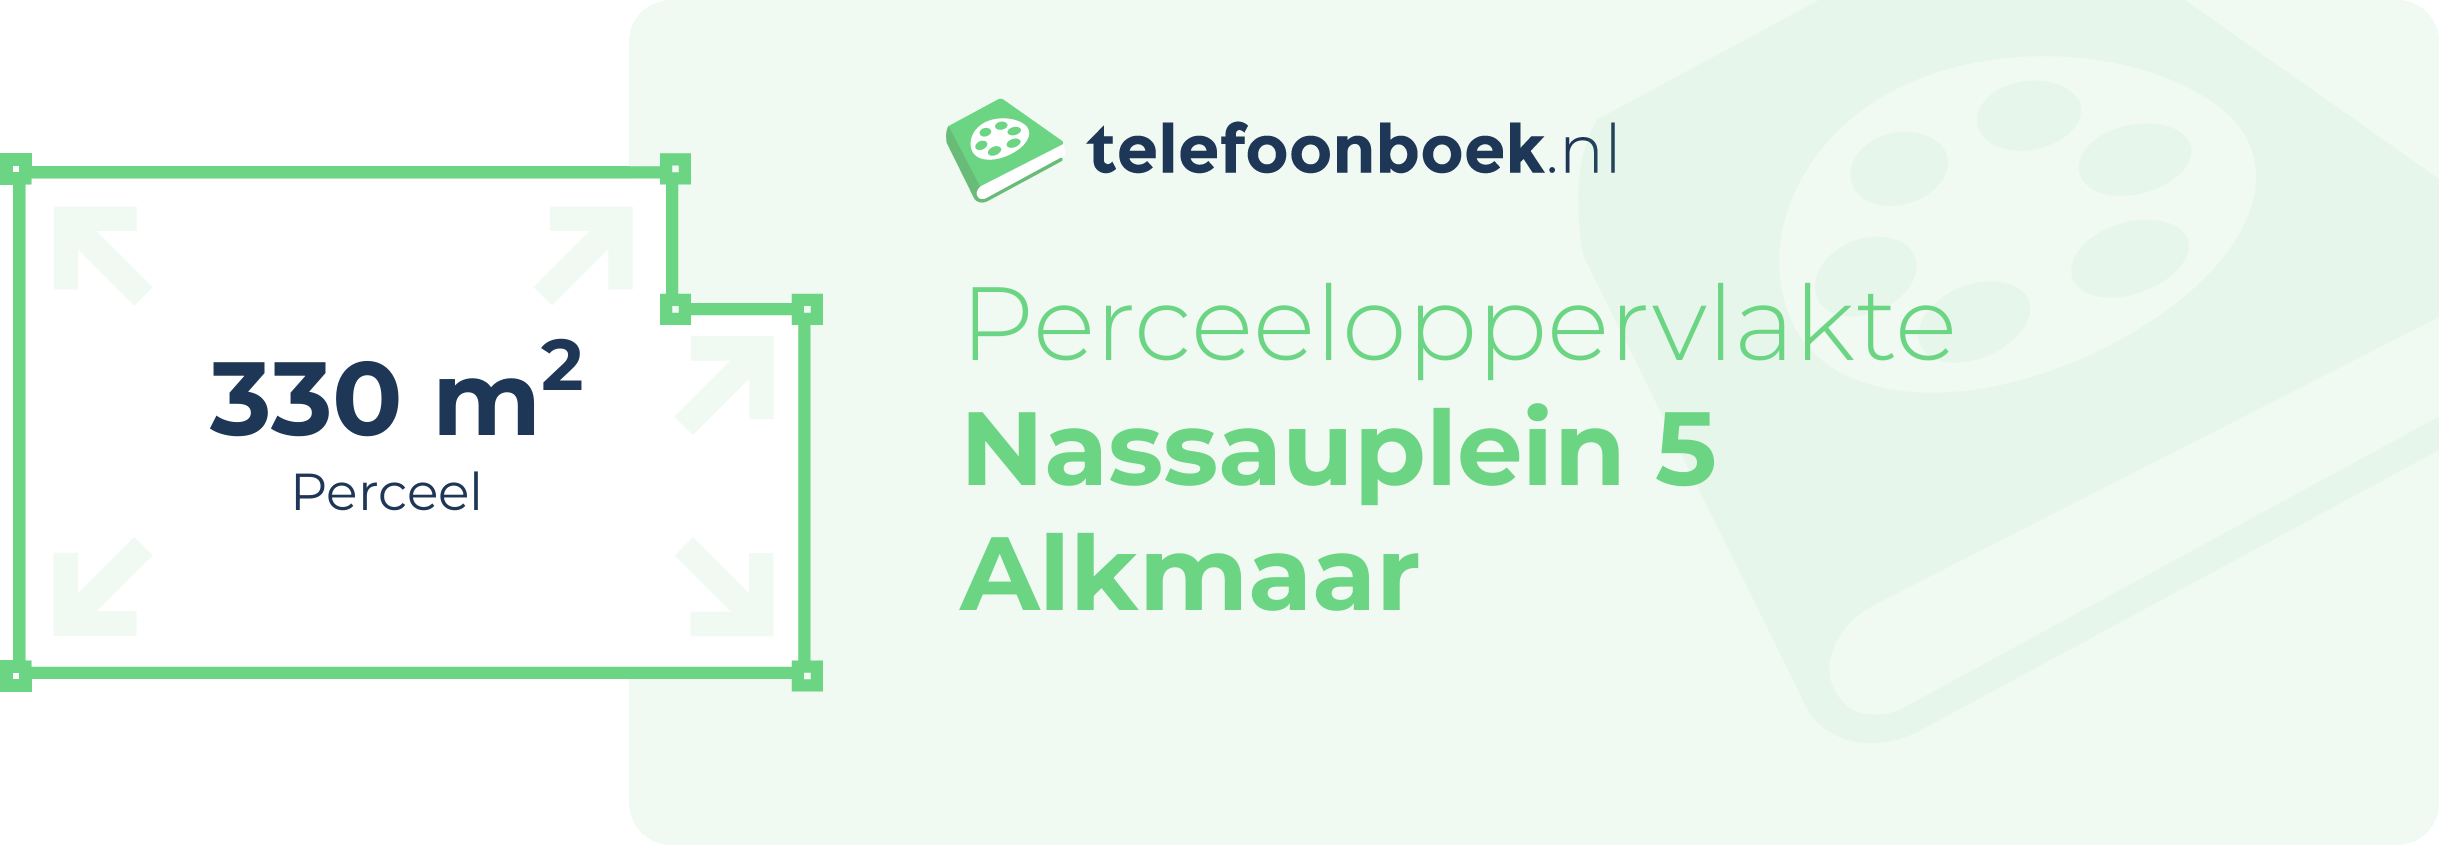 Perceeloppervlakte Nassauplein 5 Alkmaar